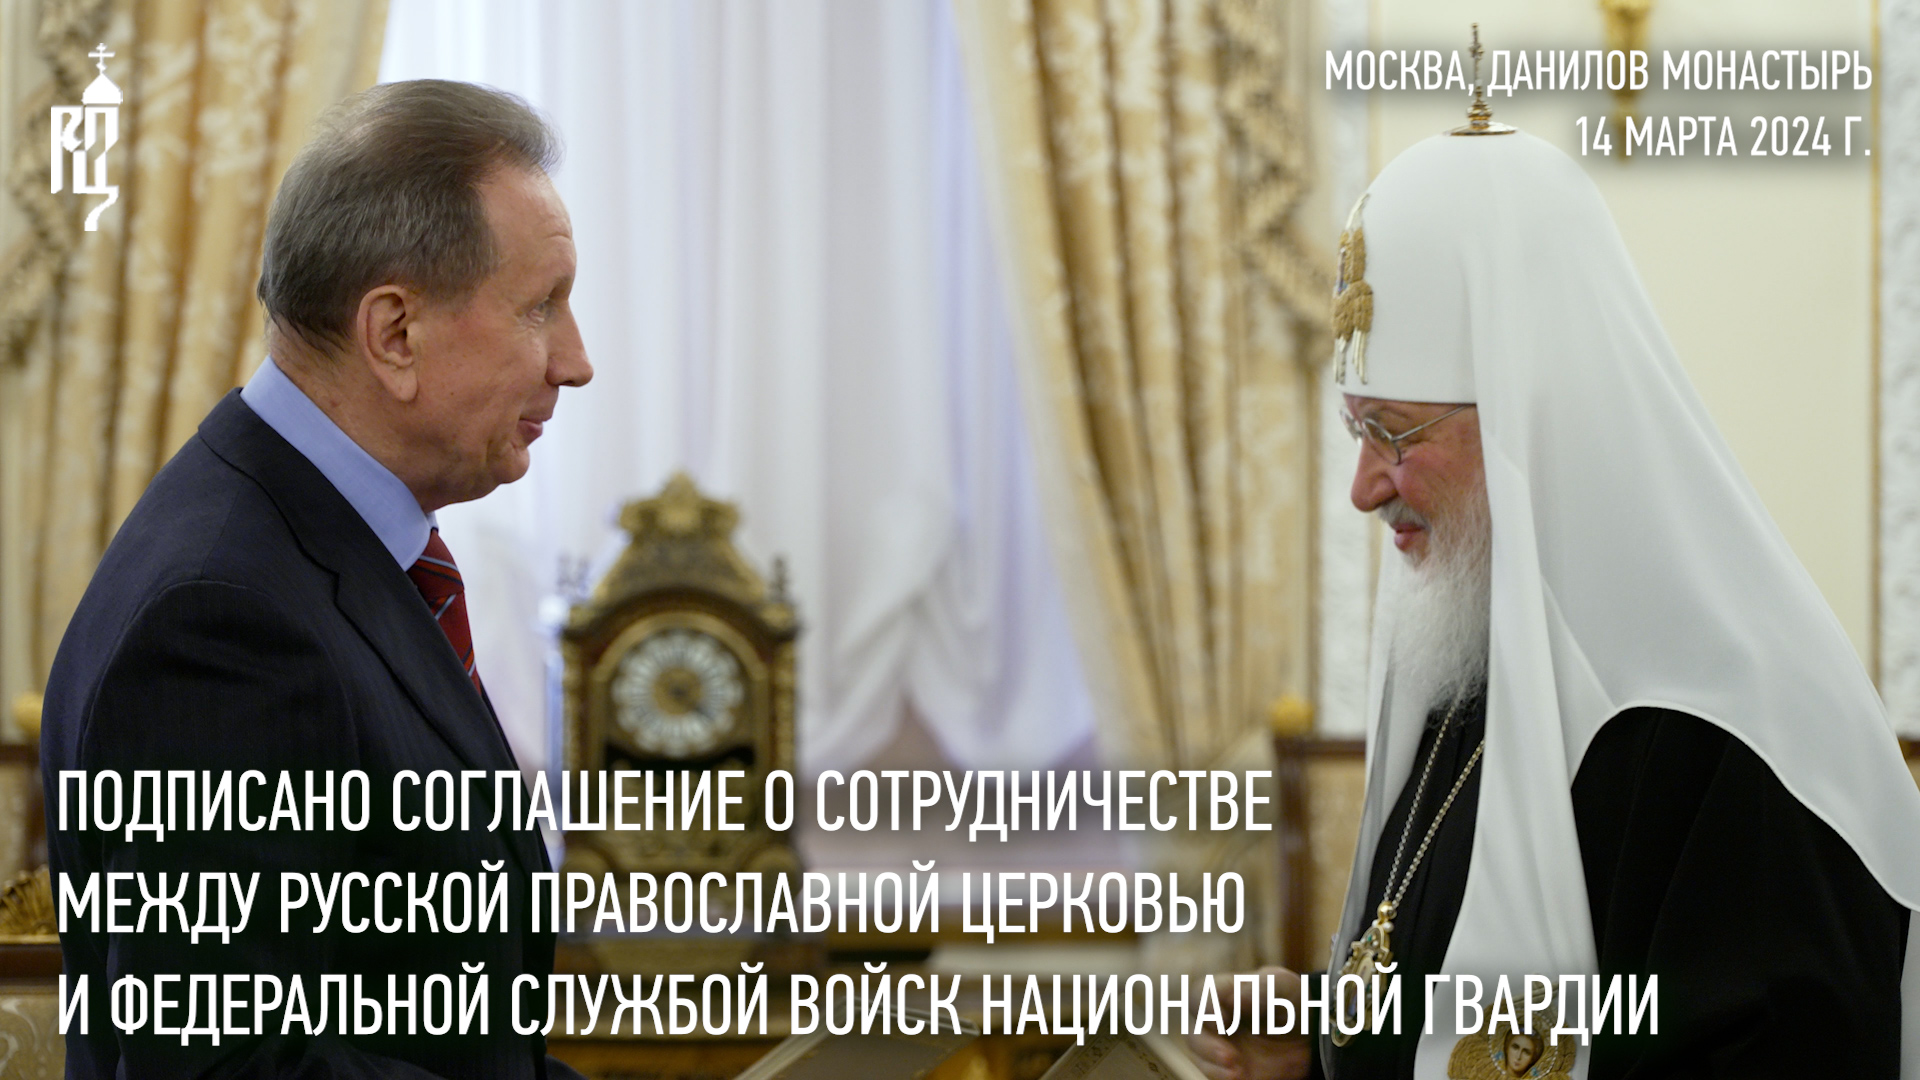 Подписано Соглашение о сотрудничестве между Русской Церковью и Федеральной службой войск нац.гвардии